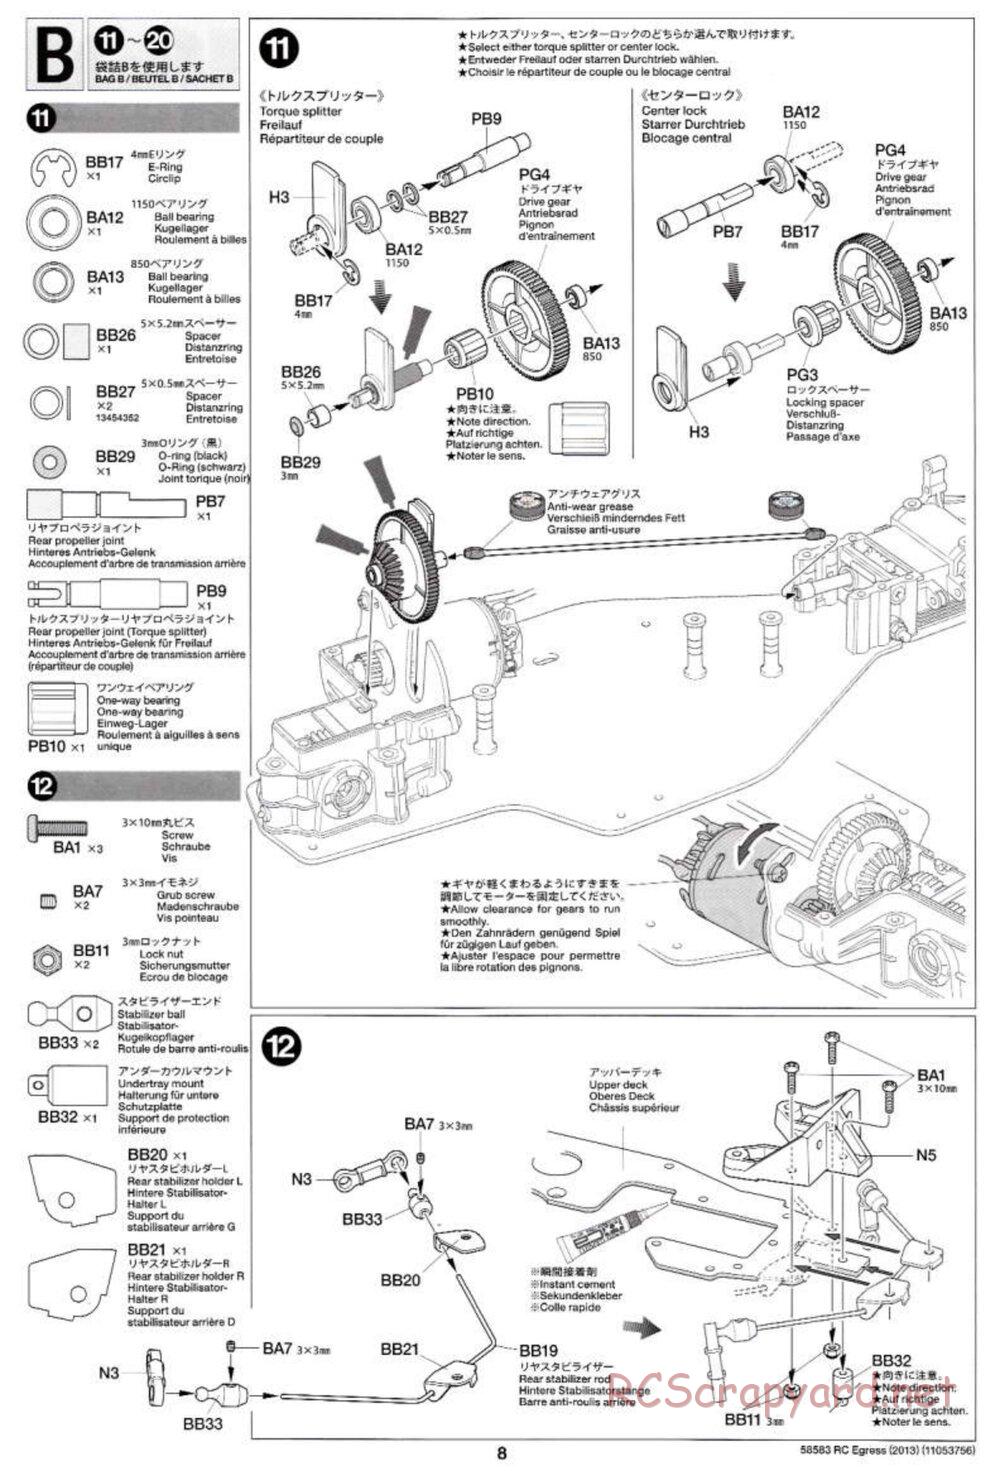 Tamiya - Egress 2013 - AV Chassis - Manual - Page 8